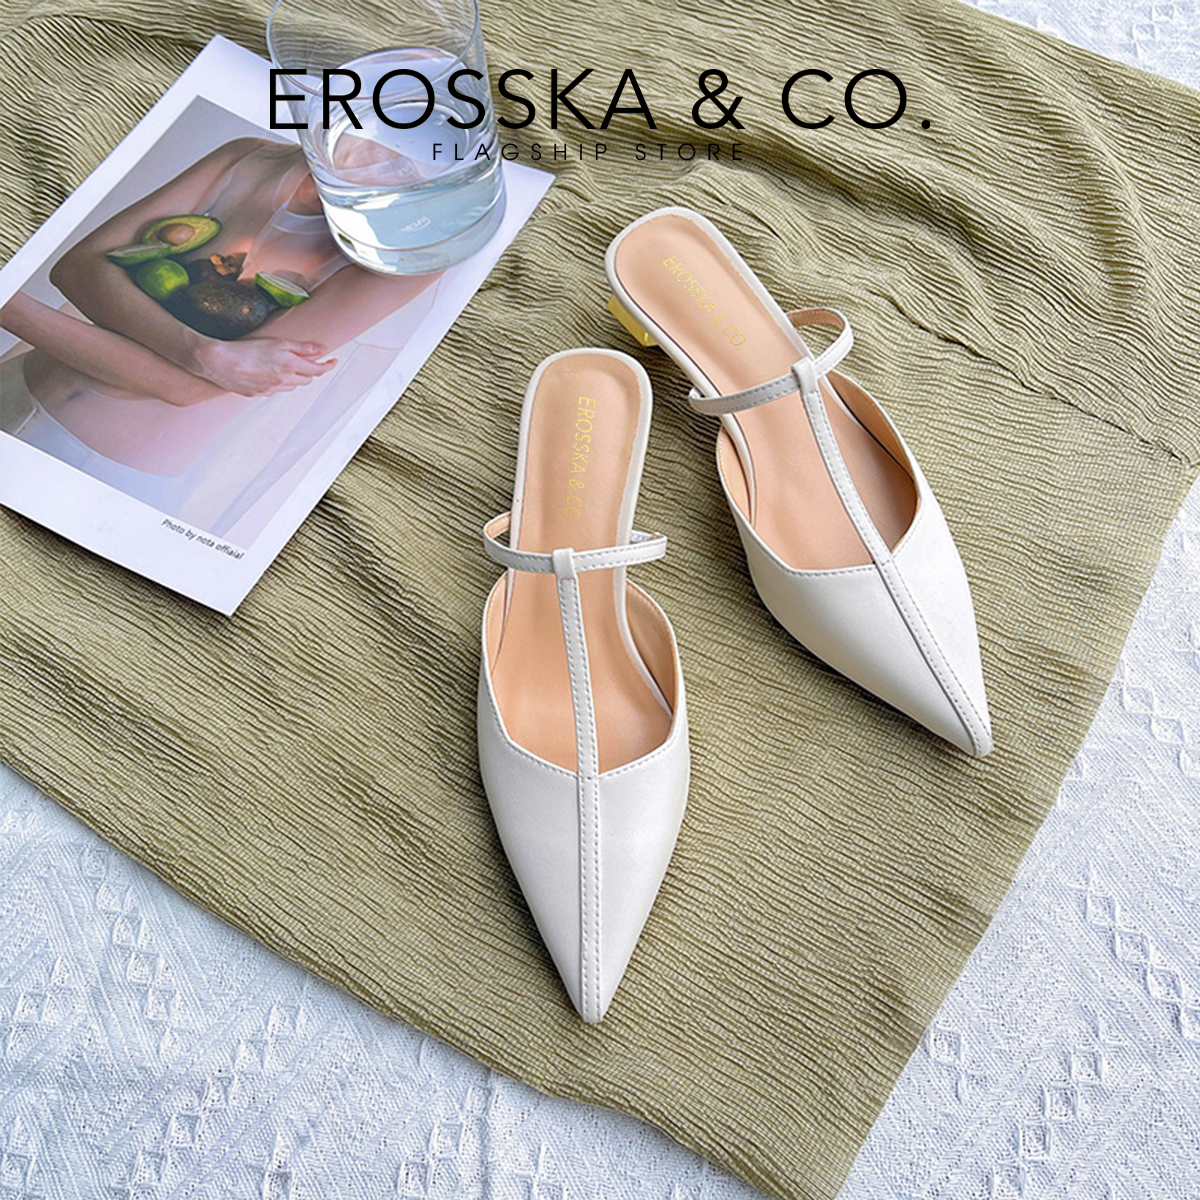 Erosska - Giày cao gót phối dây phong cách Hàn Quốc cao 5,5cm EH040